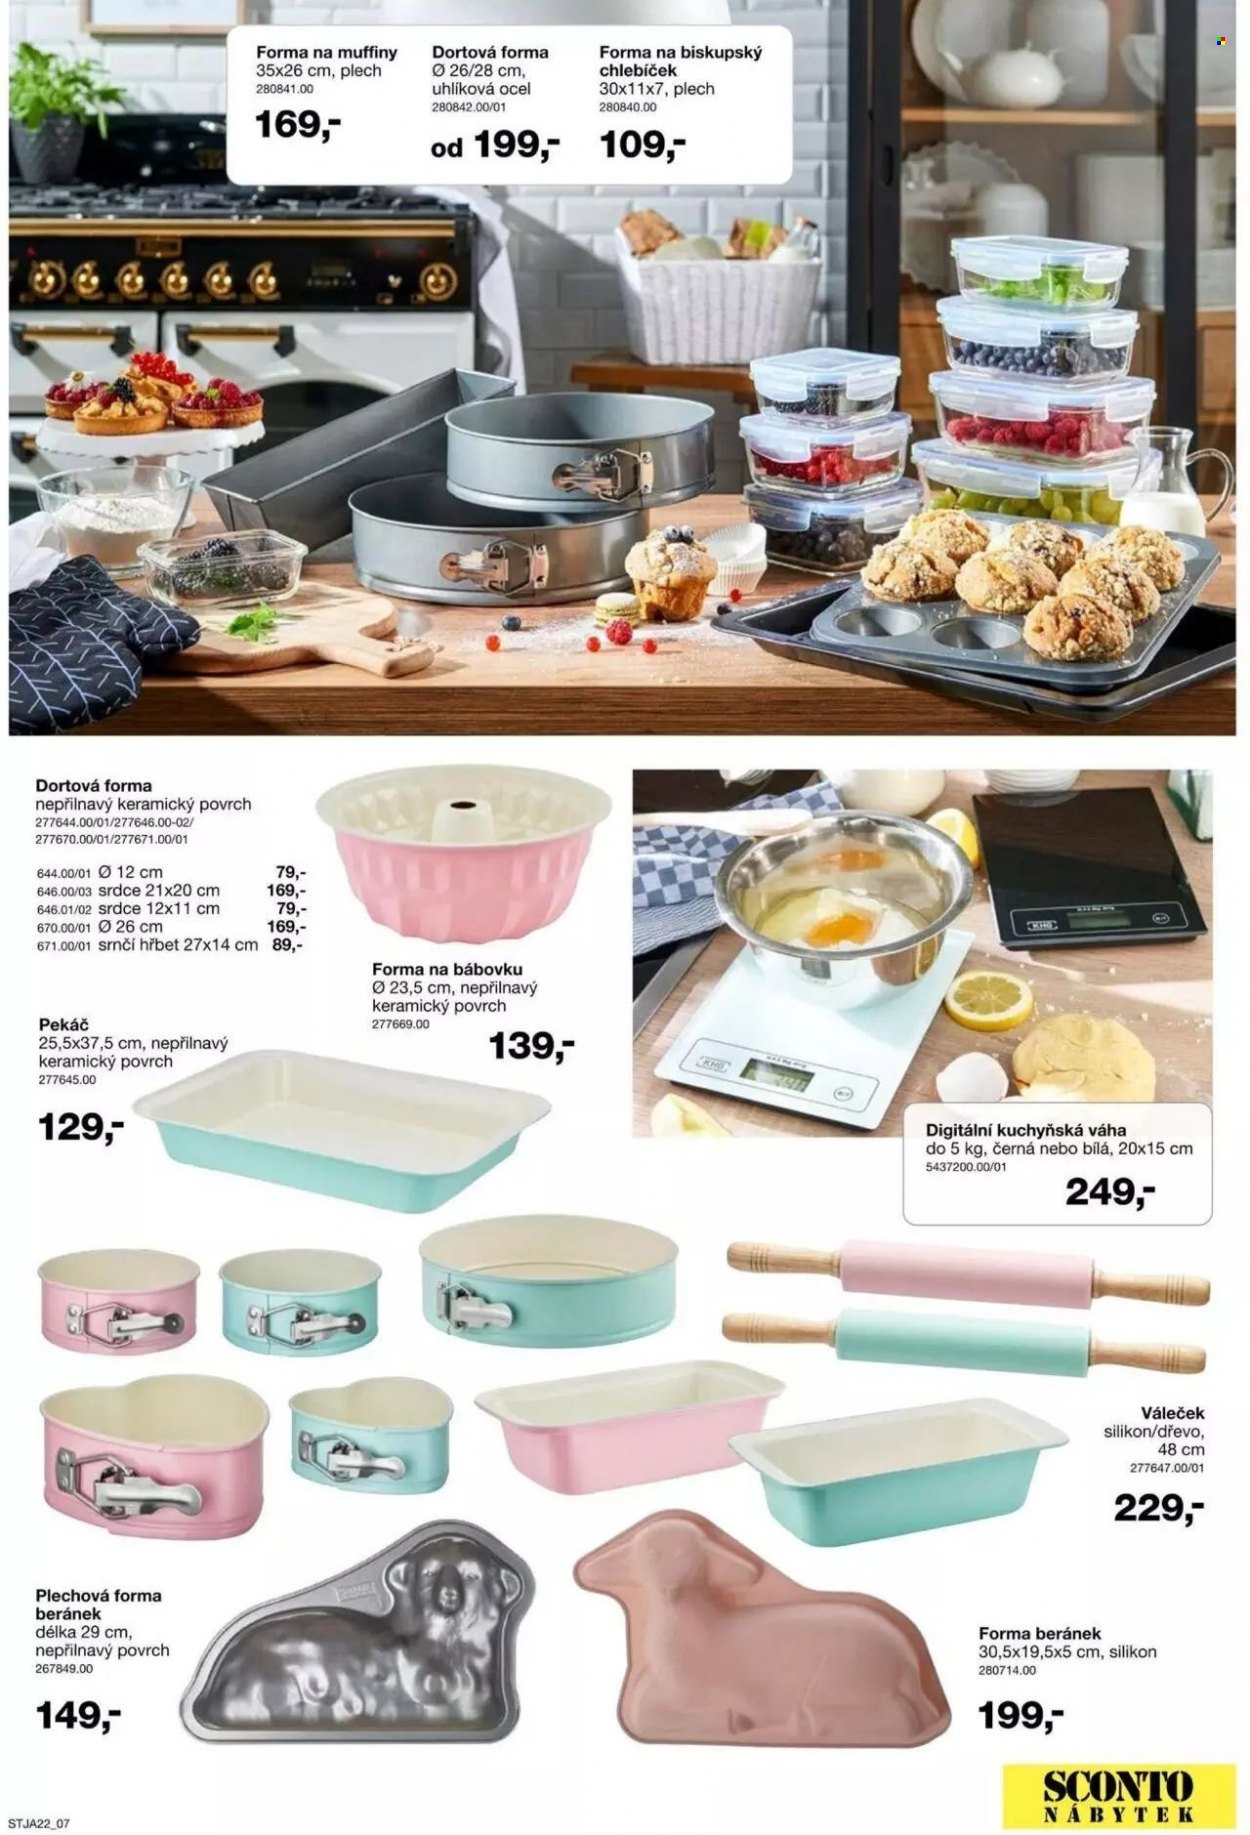 thumbnail - Leták SCONTO NÁBYTEK - Produkty v akci - kuchyňská váha, forma na pečení, forma na dort, forma na bábovku, pekáč, forma na muffiny. Strana 7.